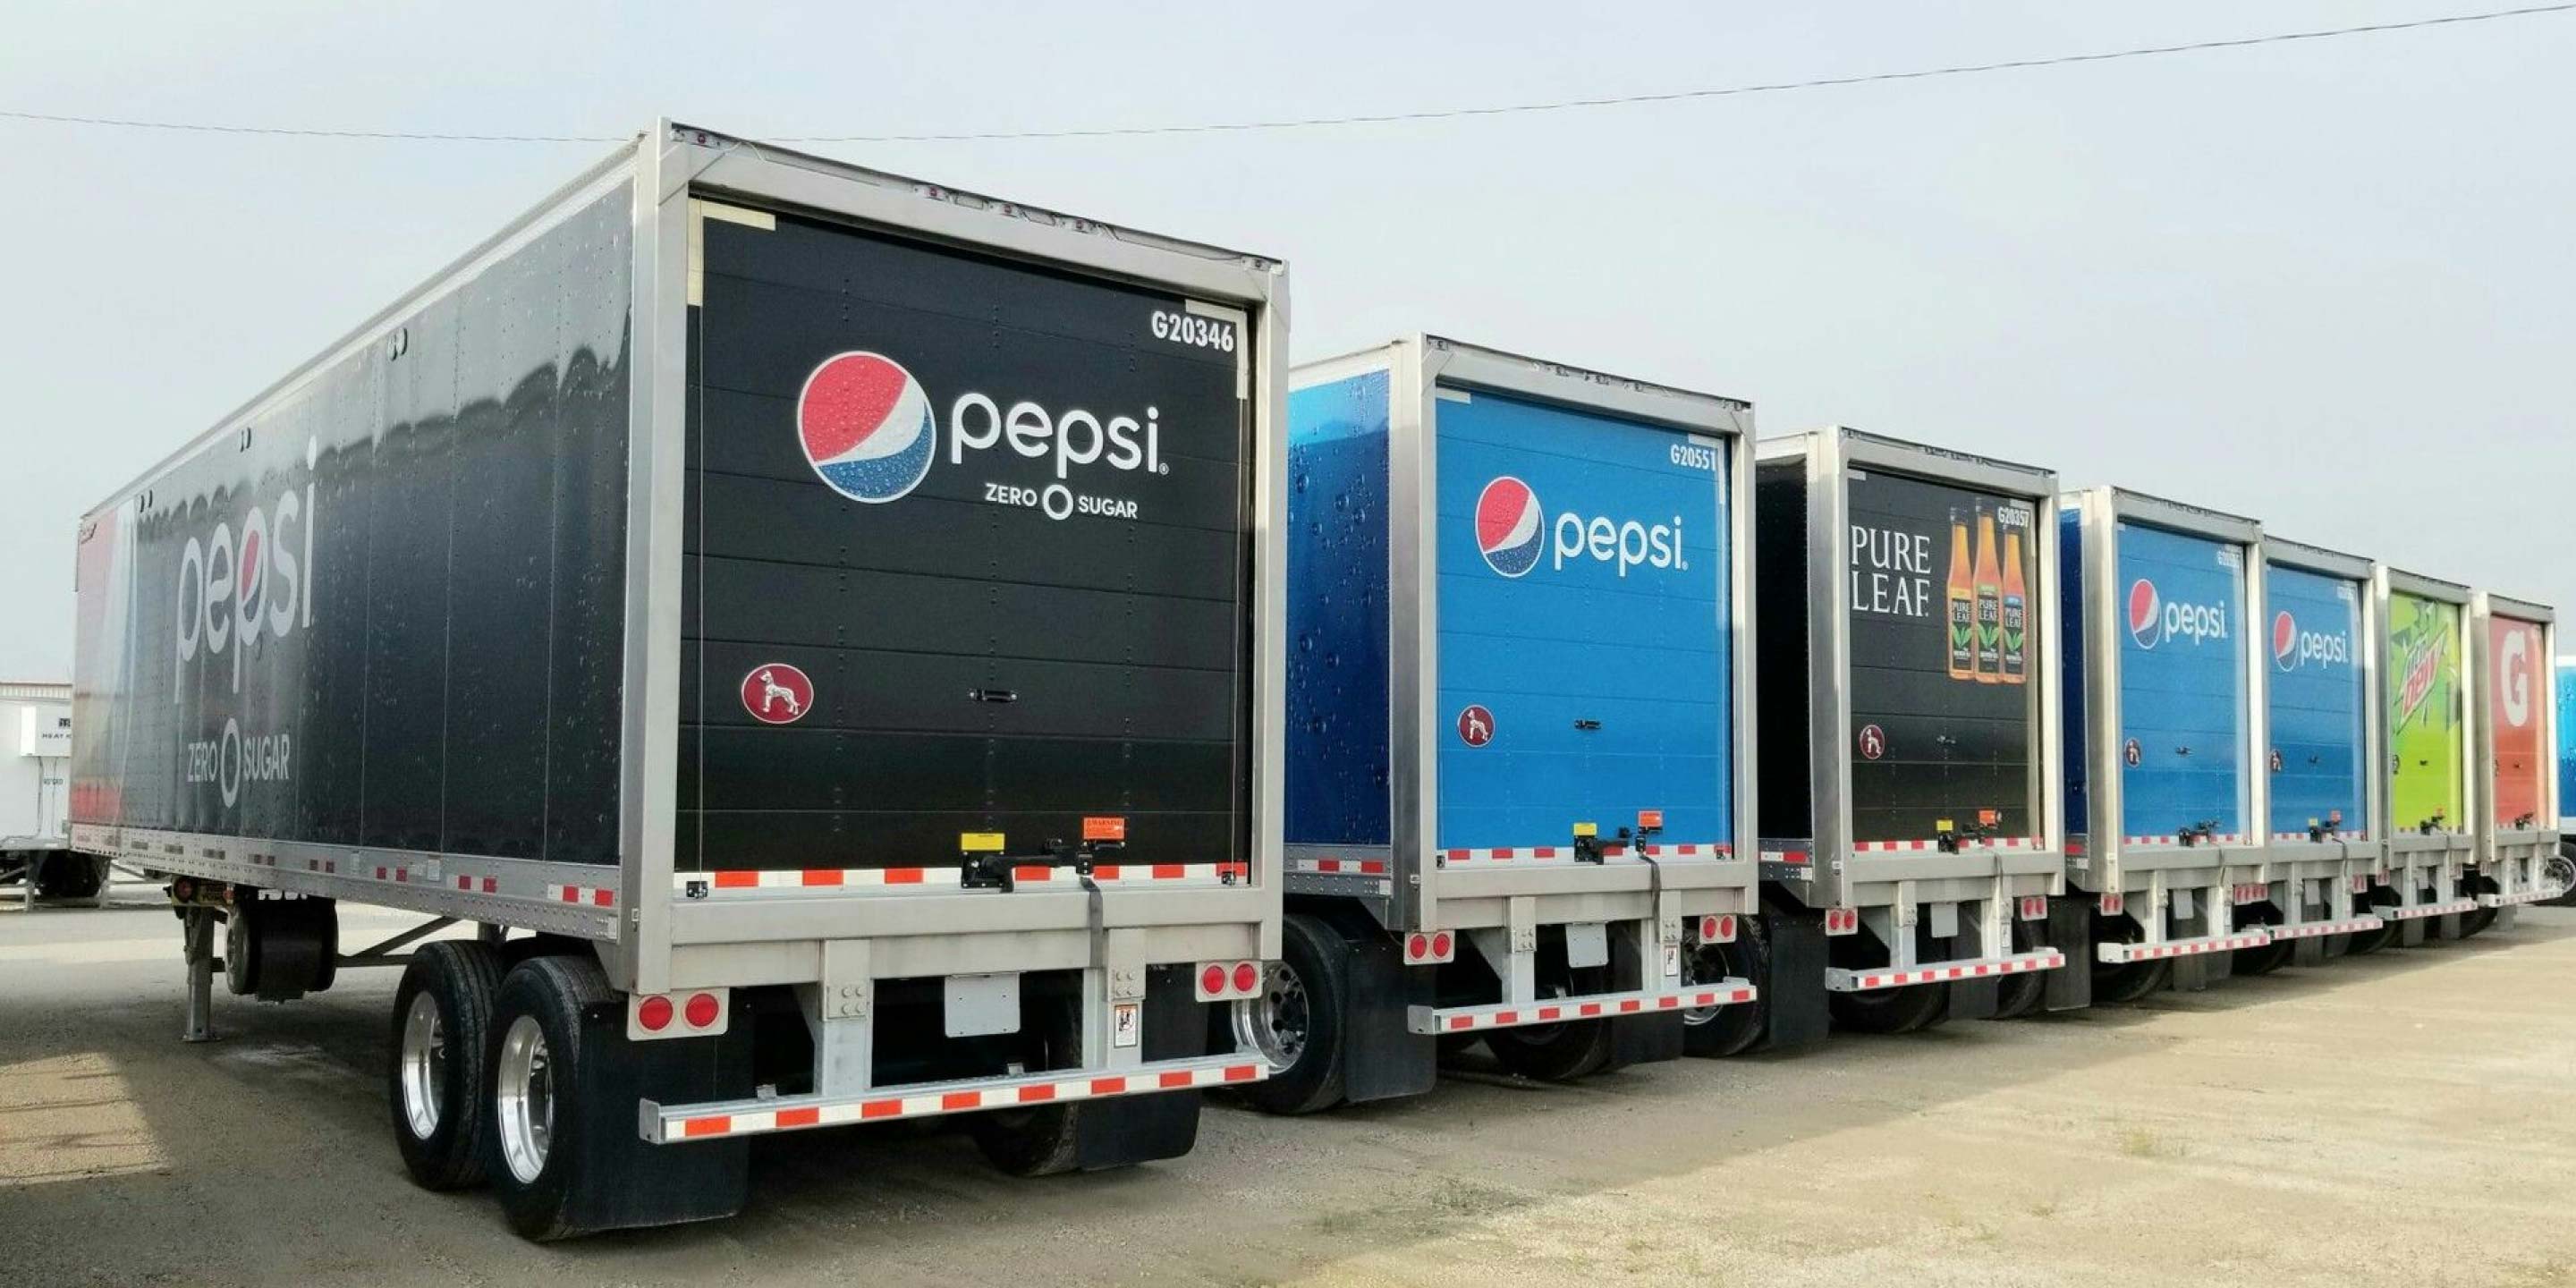 G & J Pepsi 影像